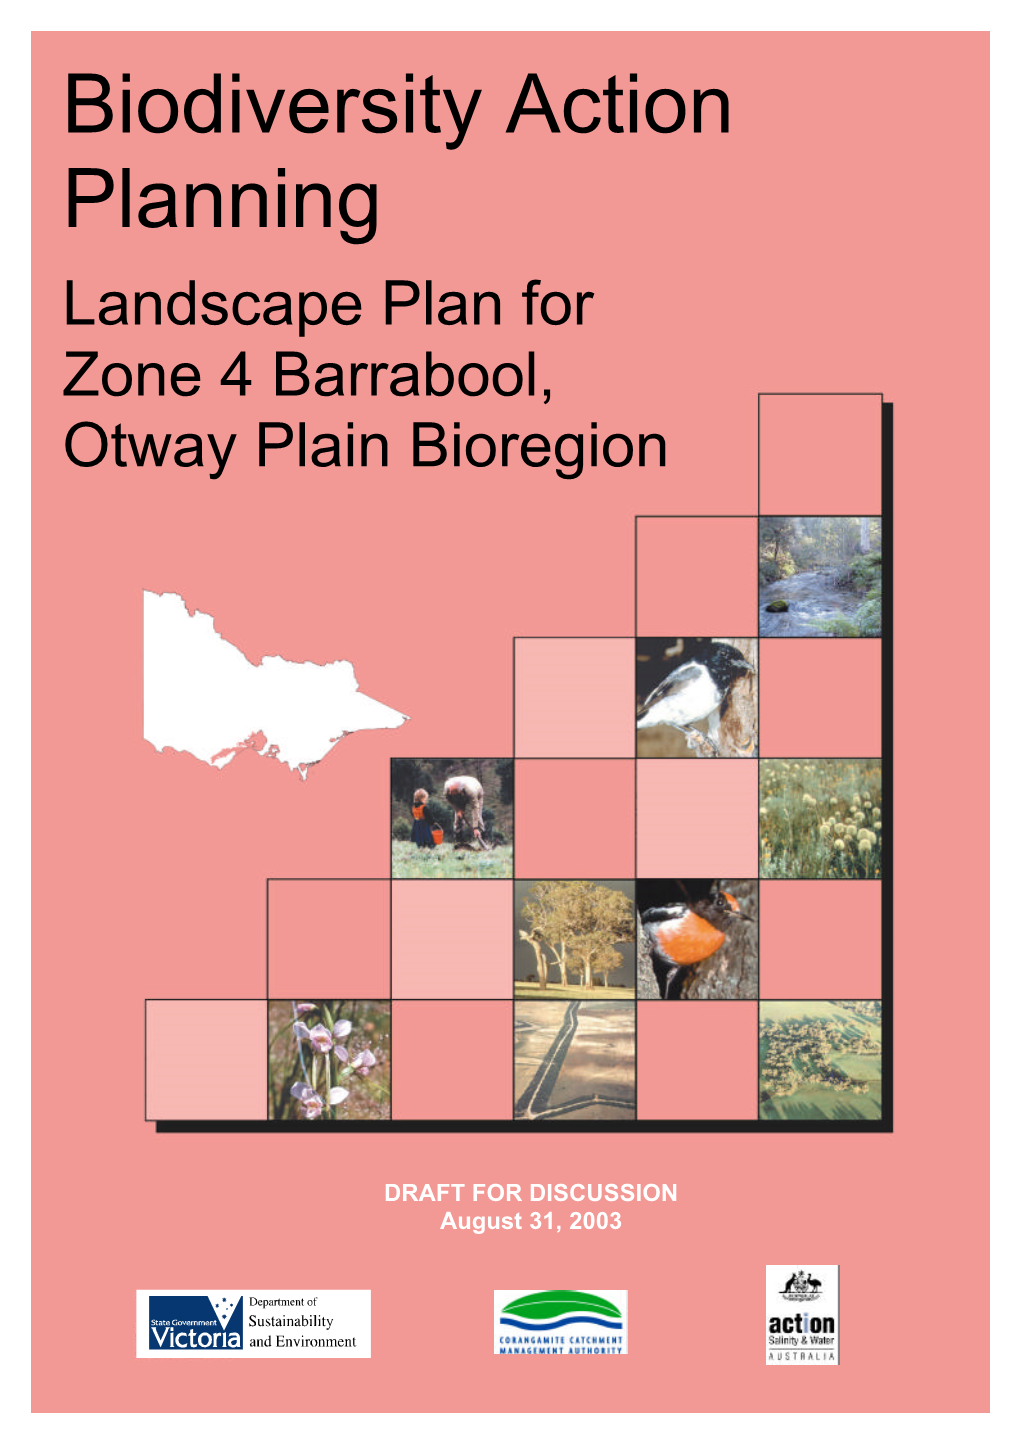 Biodiversity Action Planning Landscape Plan for Zone 4 Barrabool, Otway Plain Bioregion